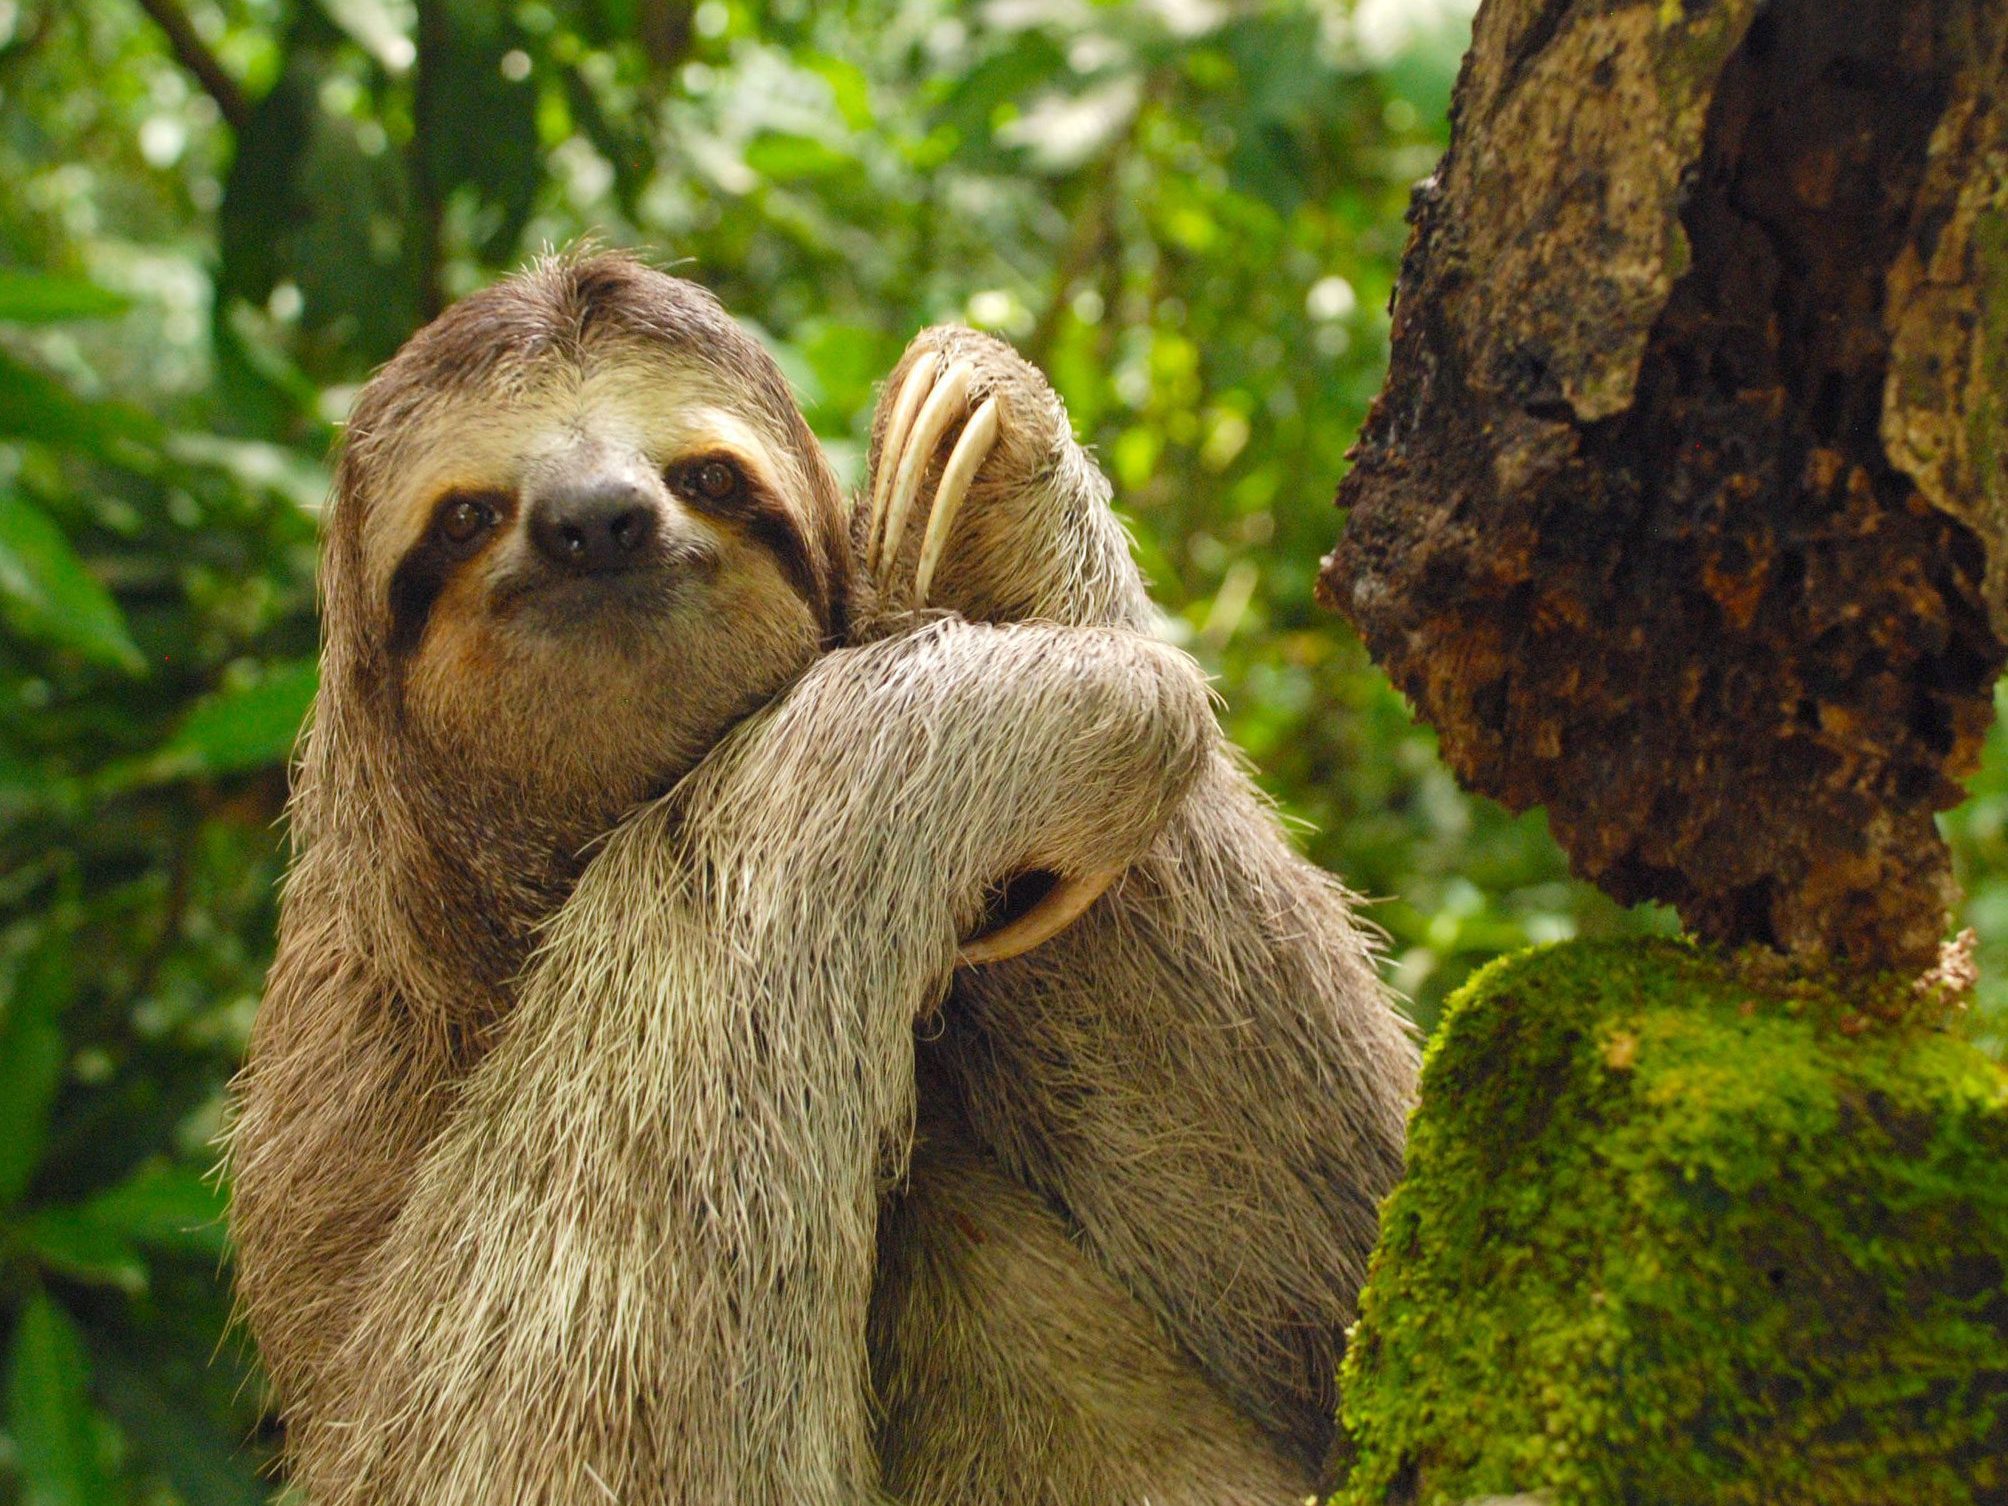 Costa Rica - Three-toed sloth by Pelin Karaca